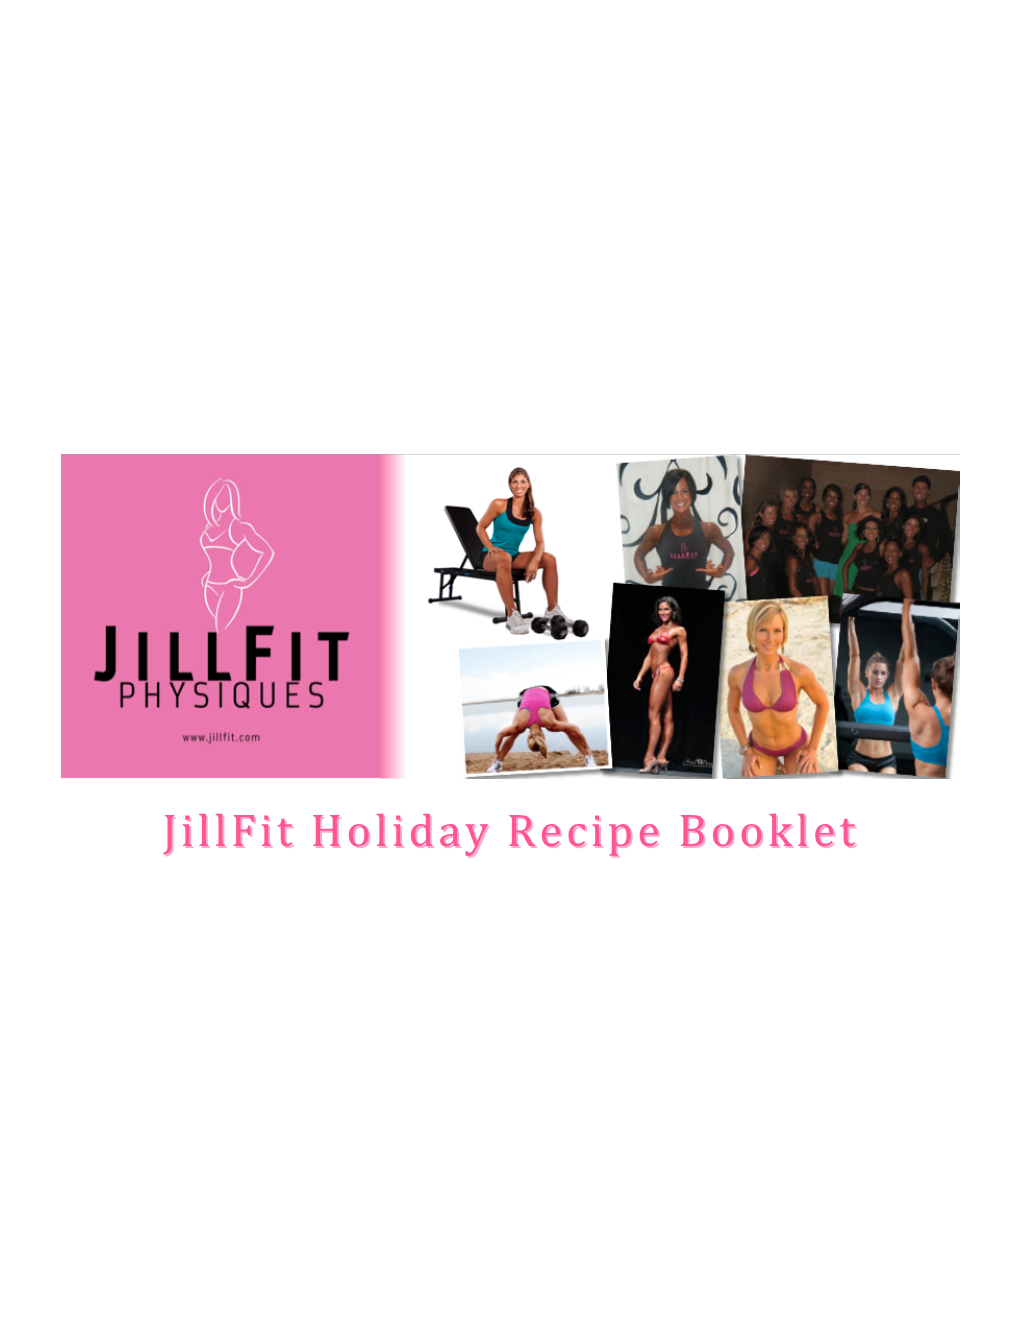 Jillfit Holiday Recipe Bookletbooklet Jillfit Holiday Recipes